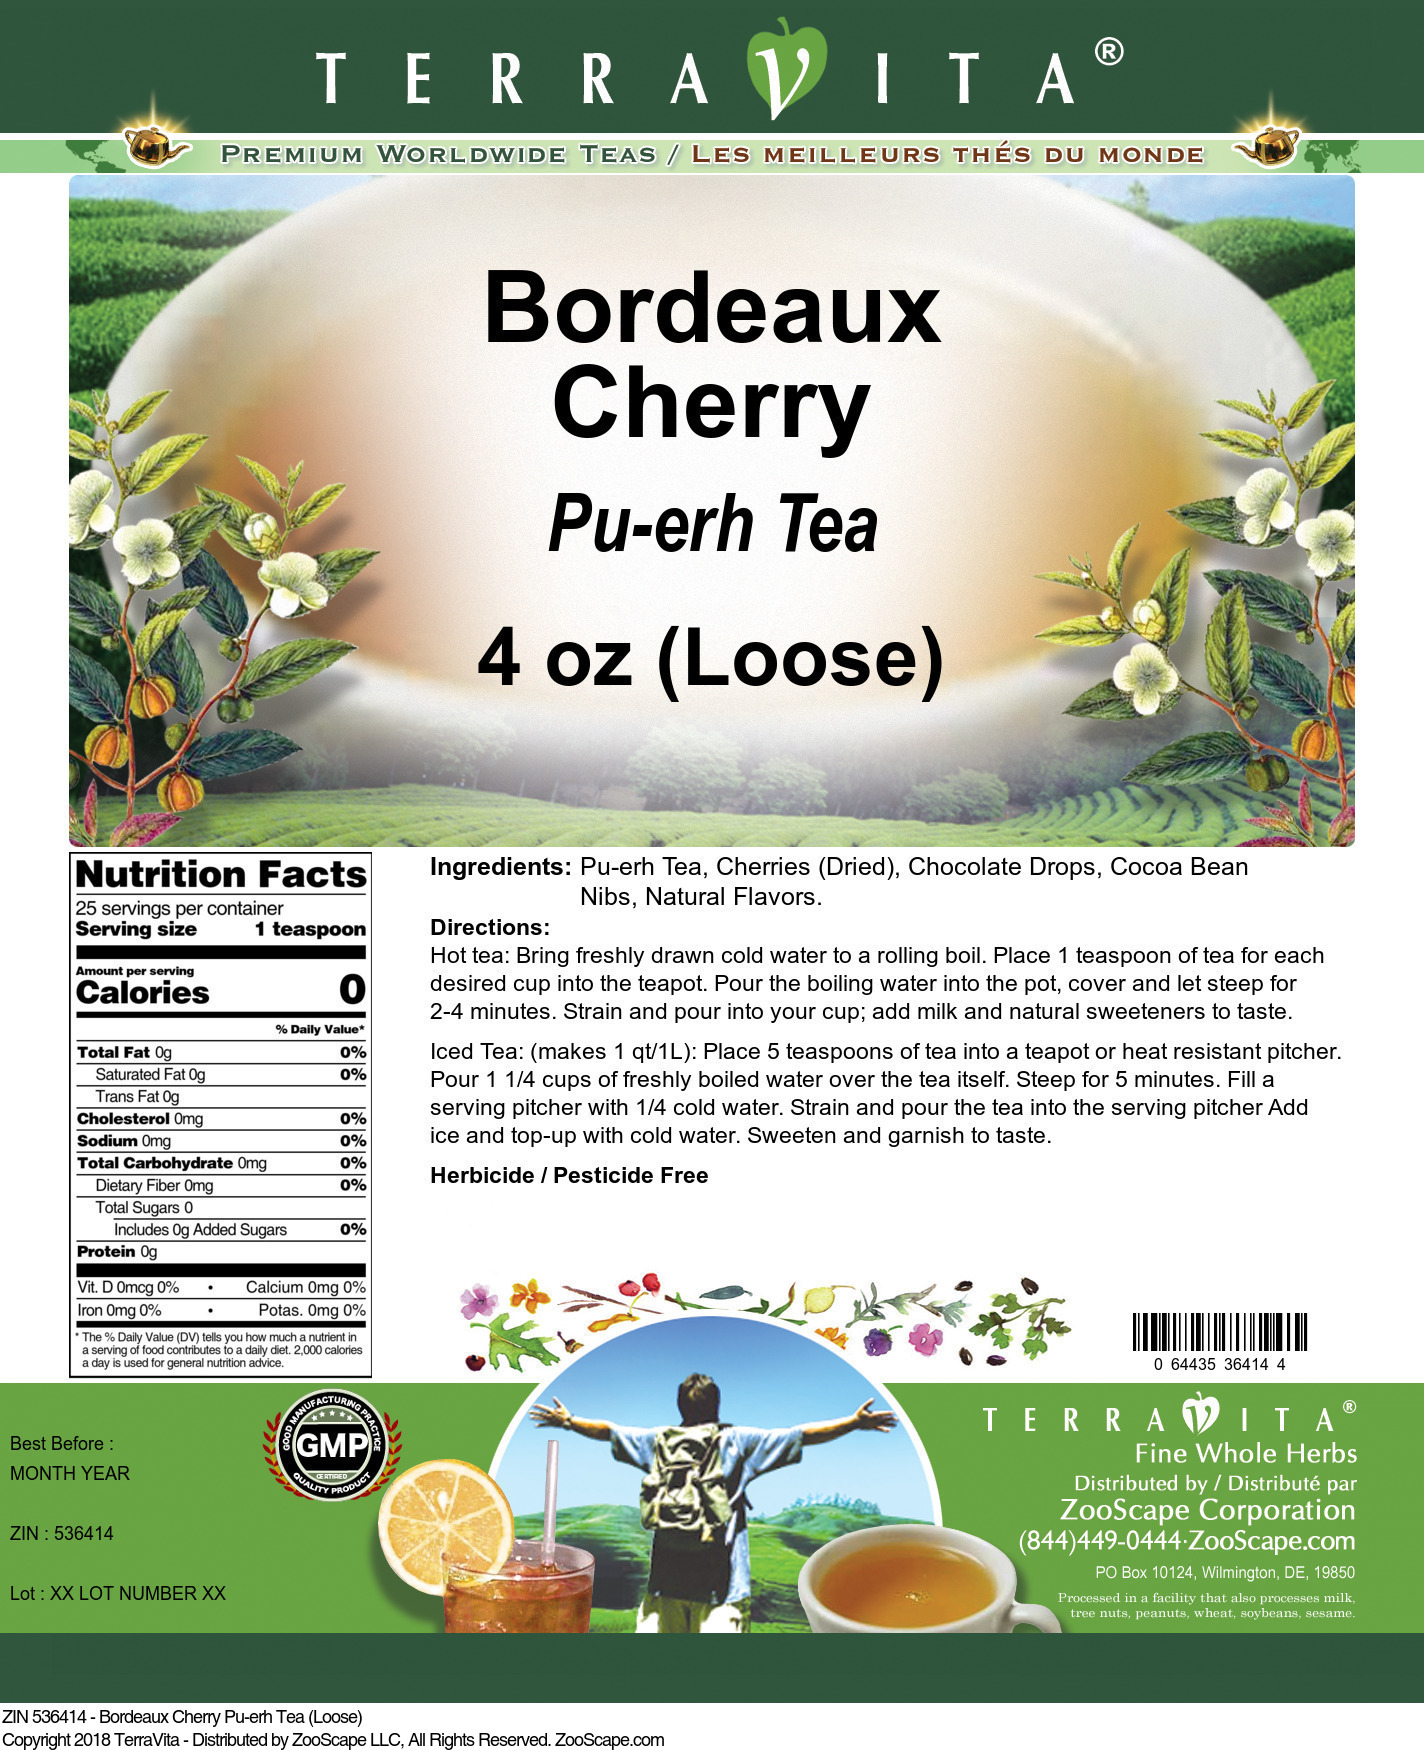 Bordeaux Cherry Pu-erh Tea (Loose) - Label